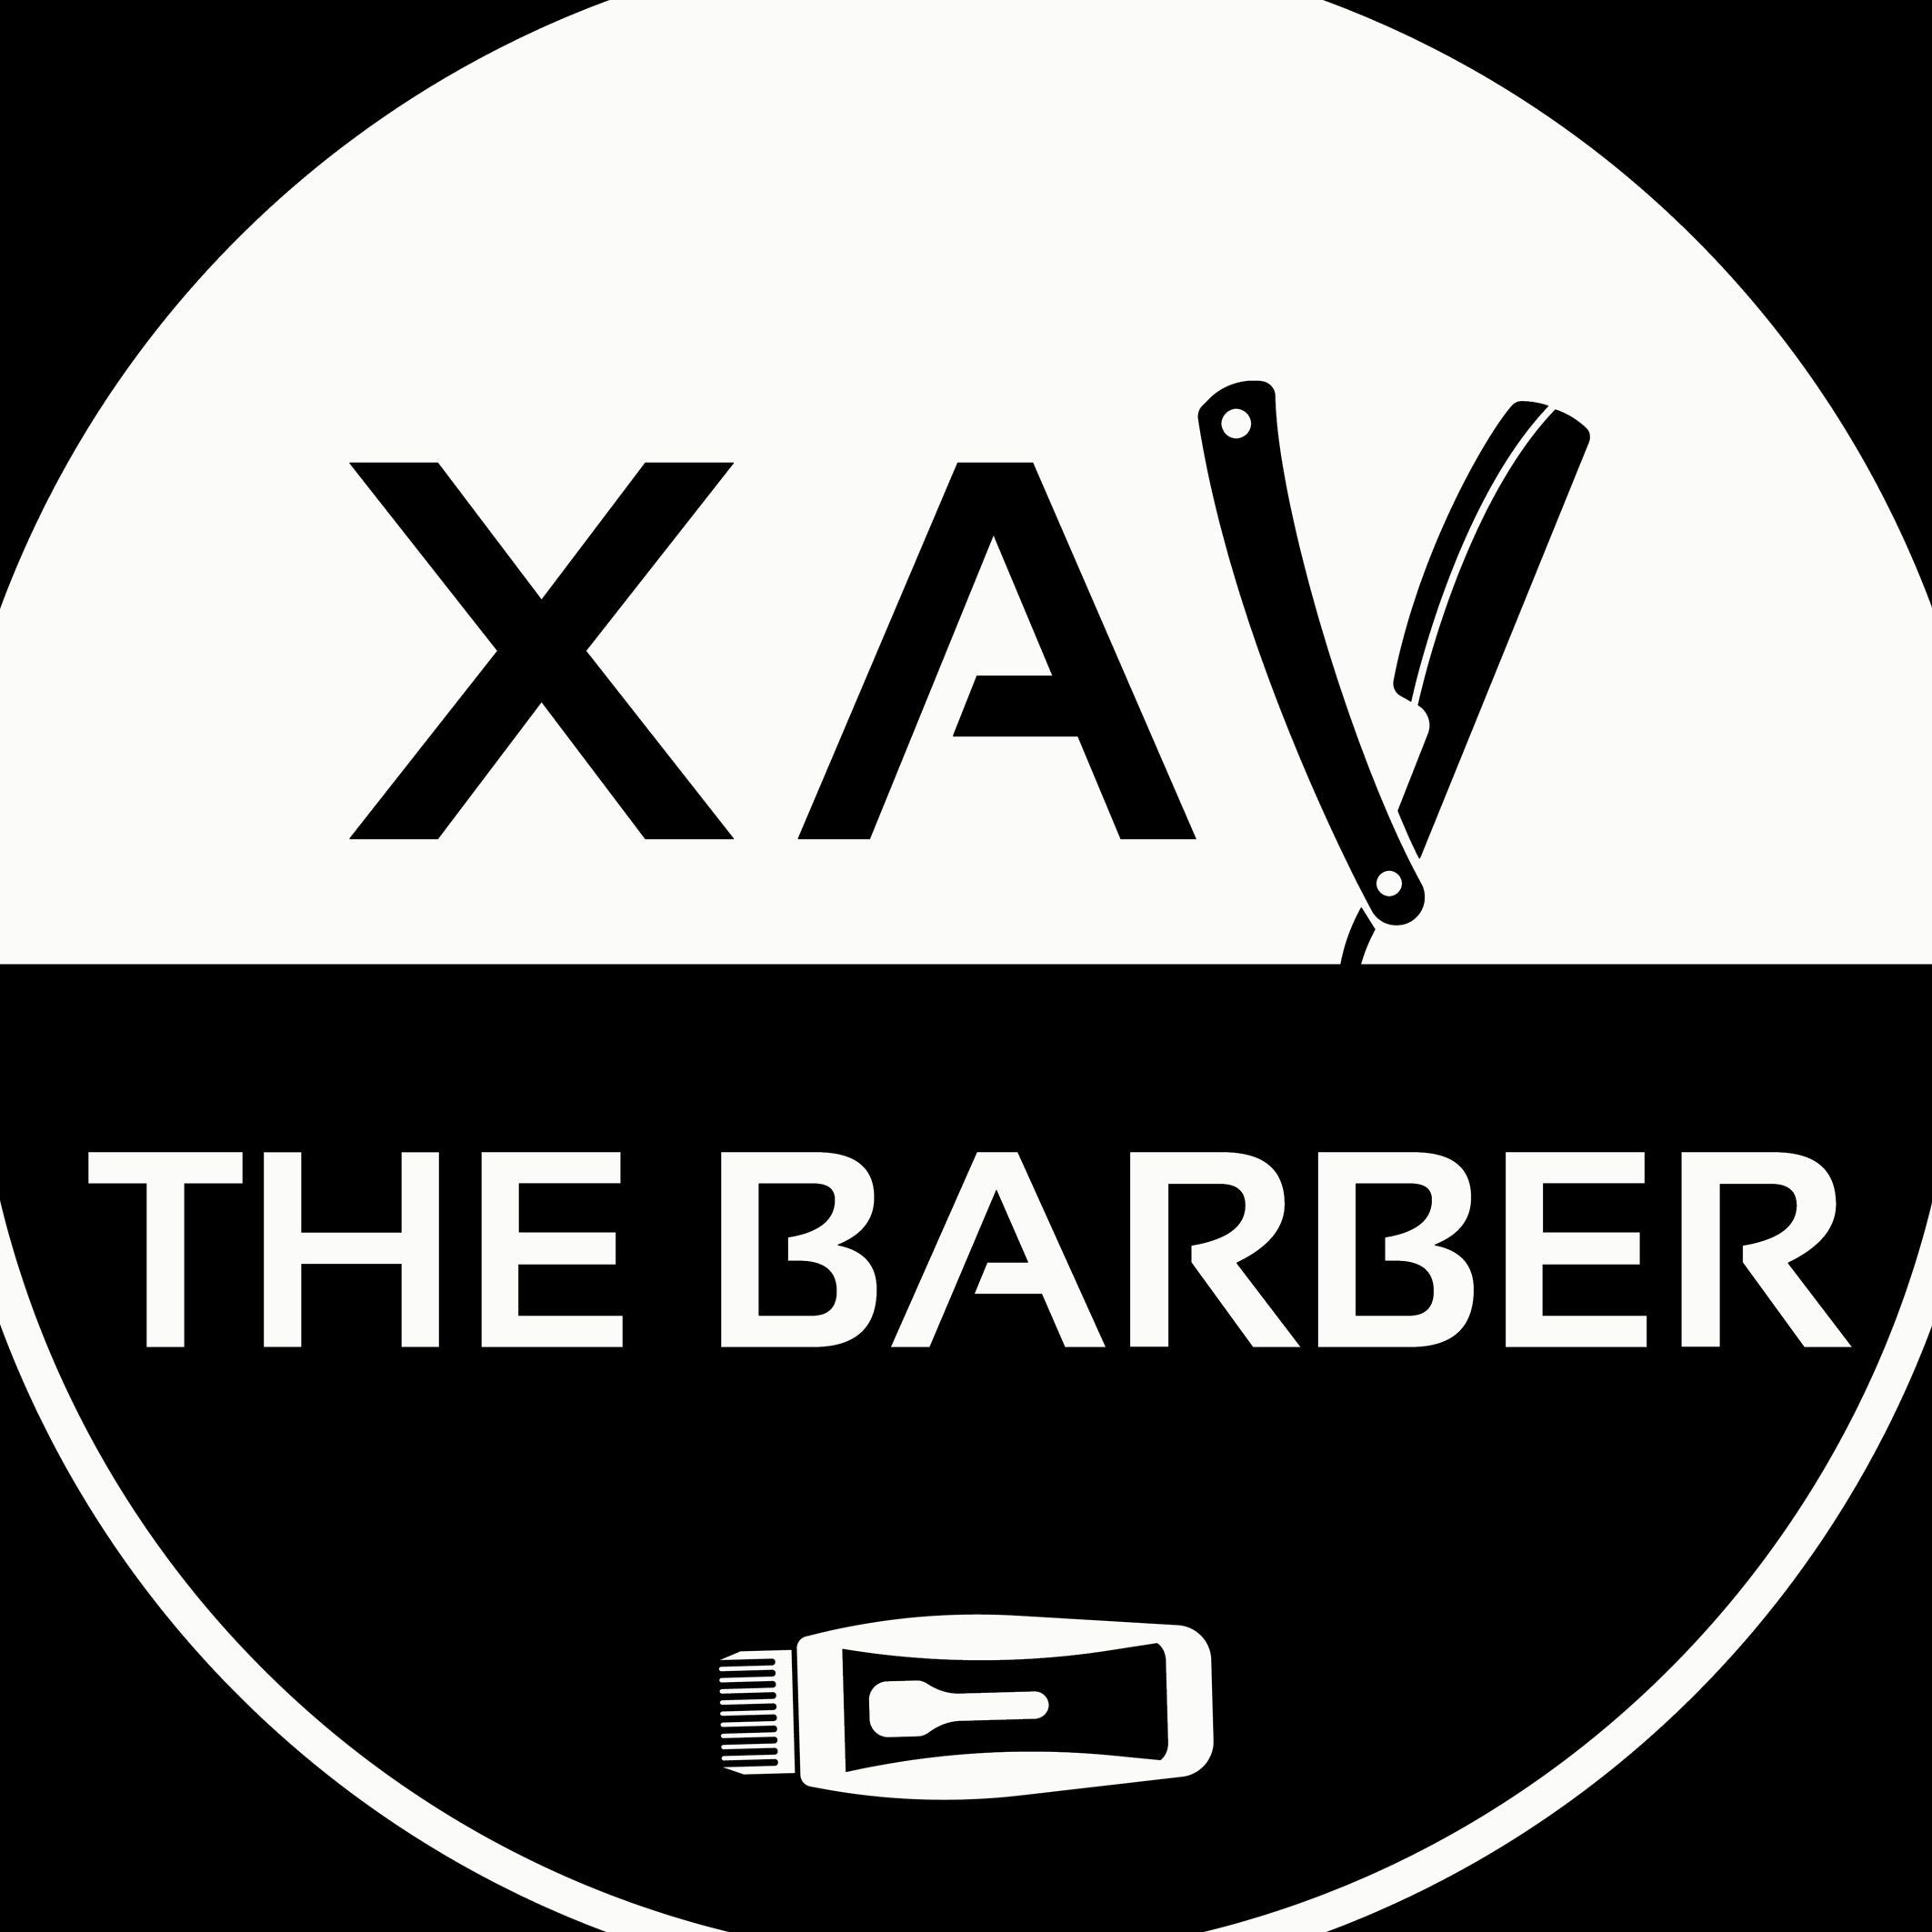 Xav The Barber Studio - Xav The Barber Studio & Spa